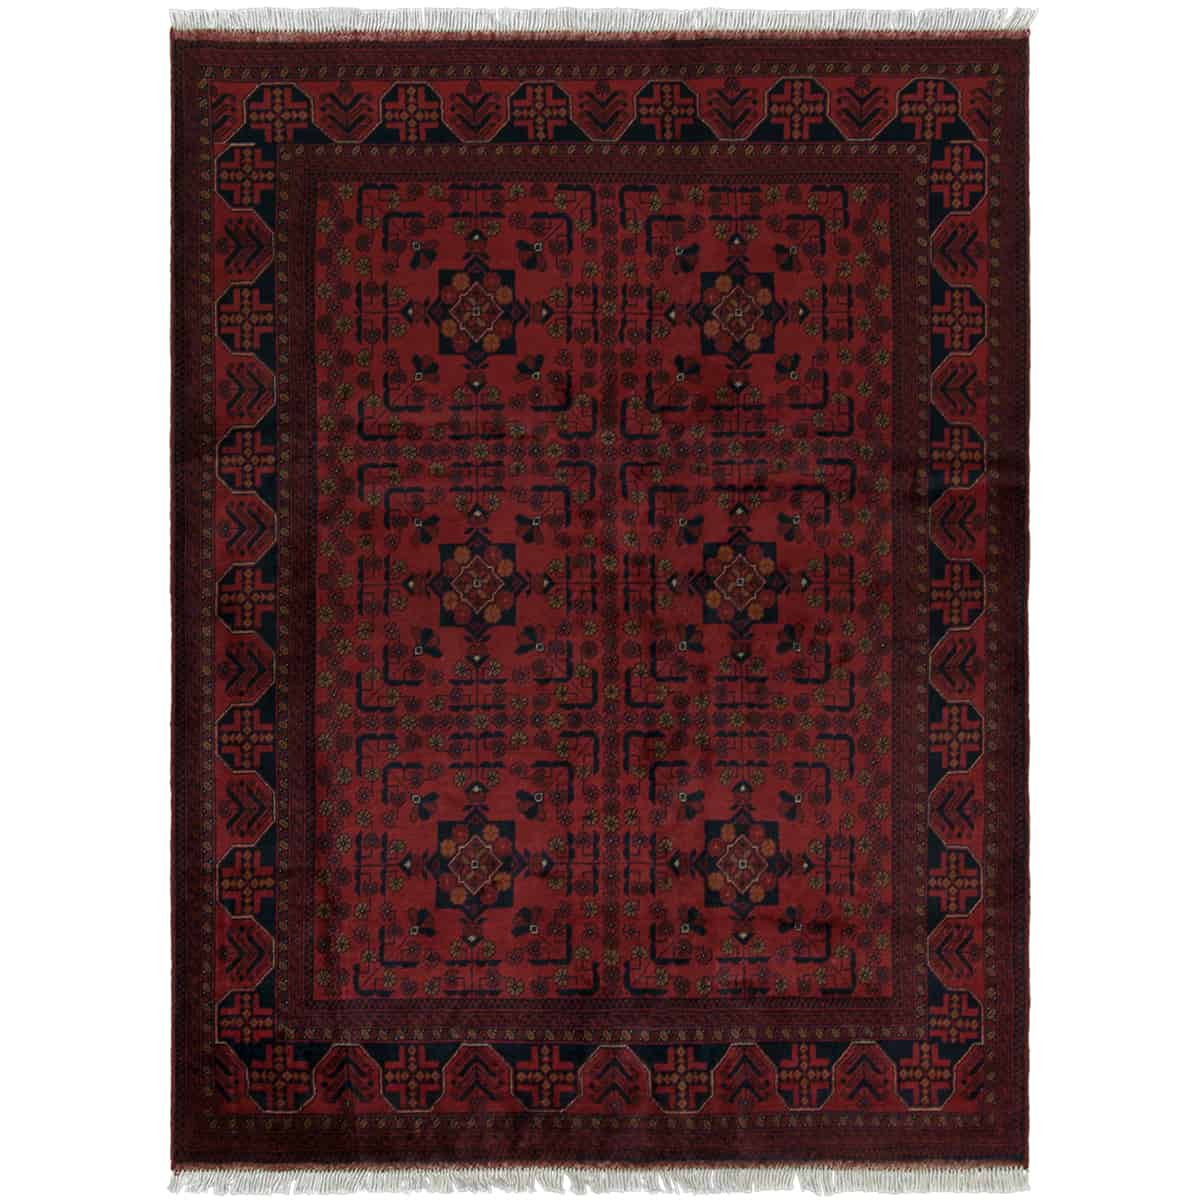  חל ממדי 00 אדום 150x200 | השטיח האדום 